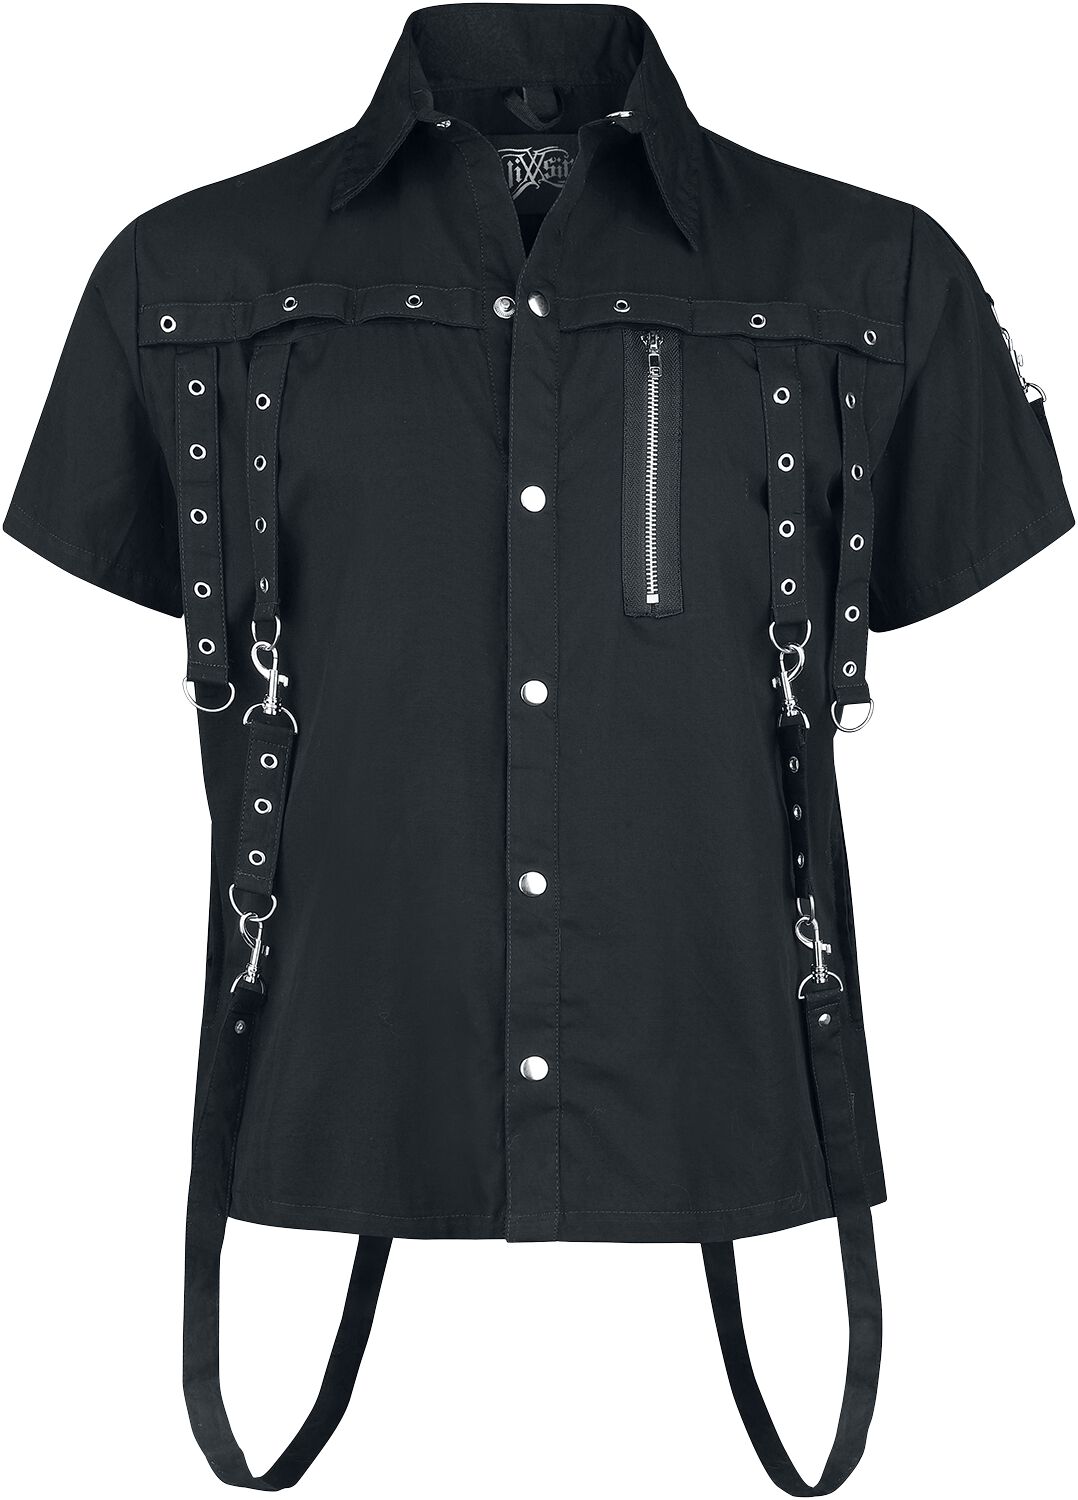 Vixxsin - Gothic Kurzarmhemd - Cassius Shirt - S bis 4XL - für Männer - Größe L - schwarz